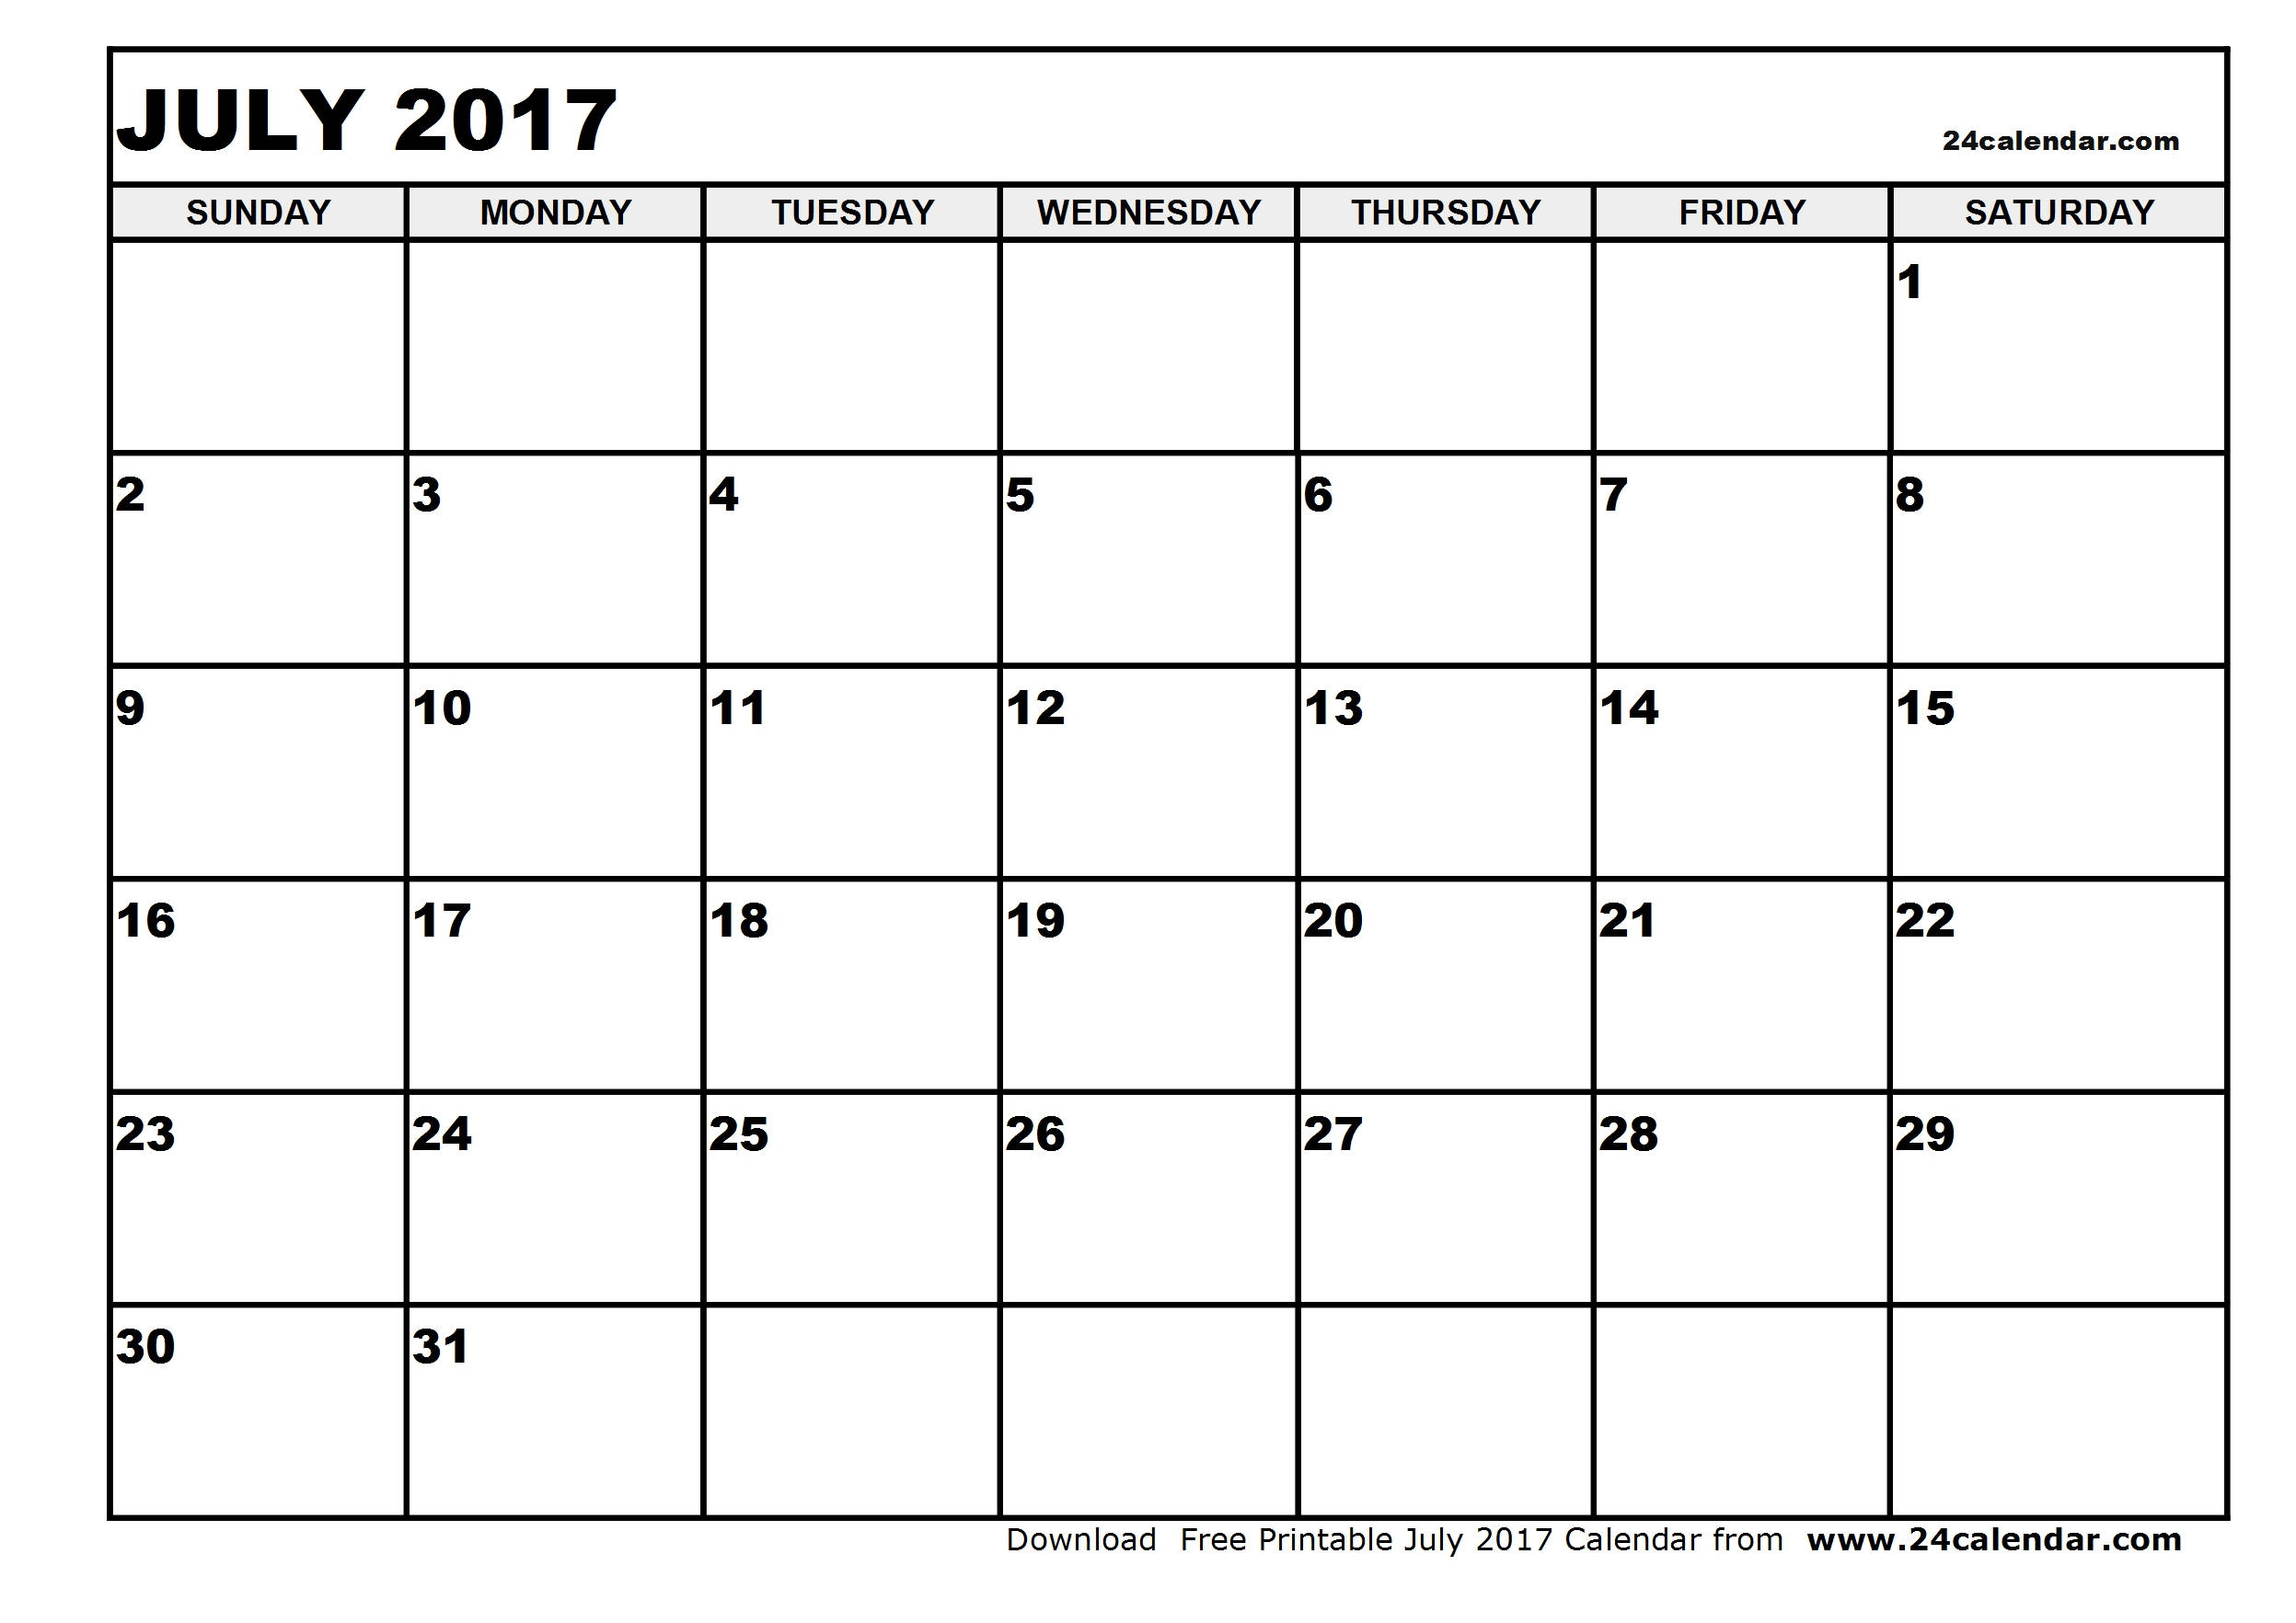 Blank July 2017 Calendar in Printable format.